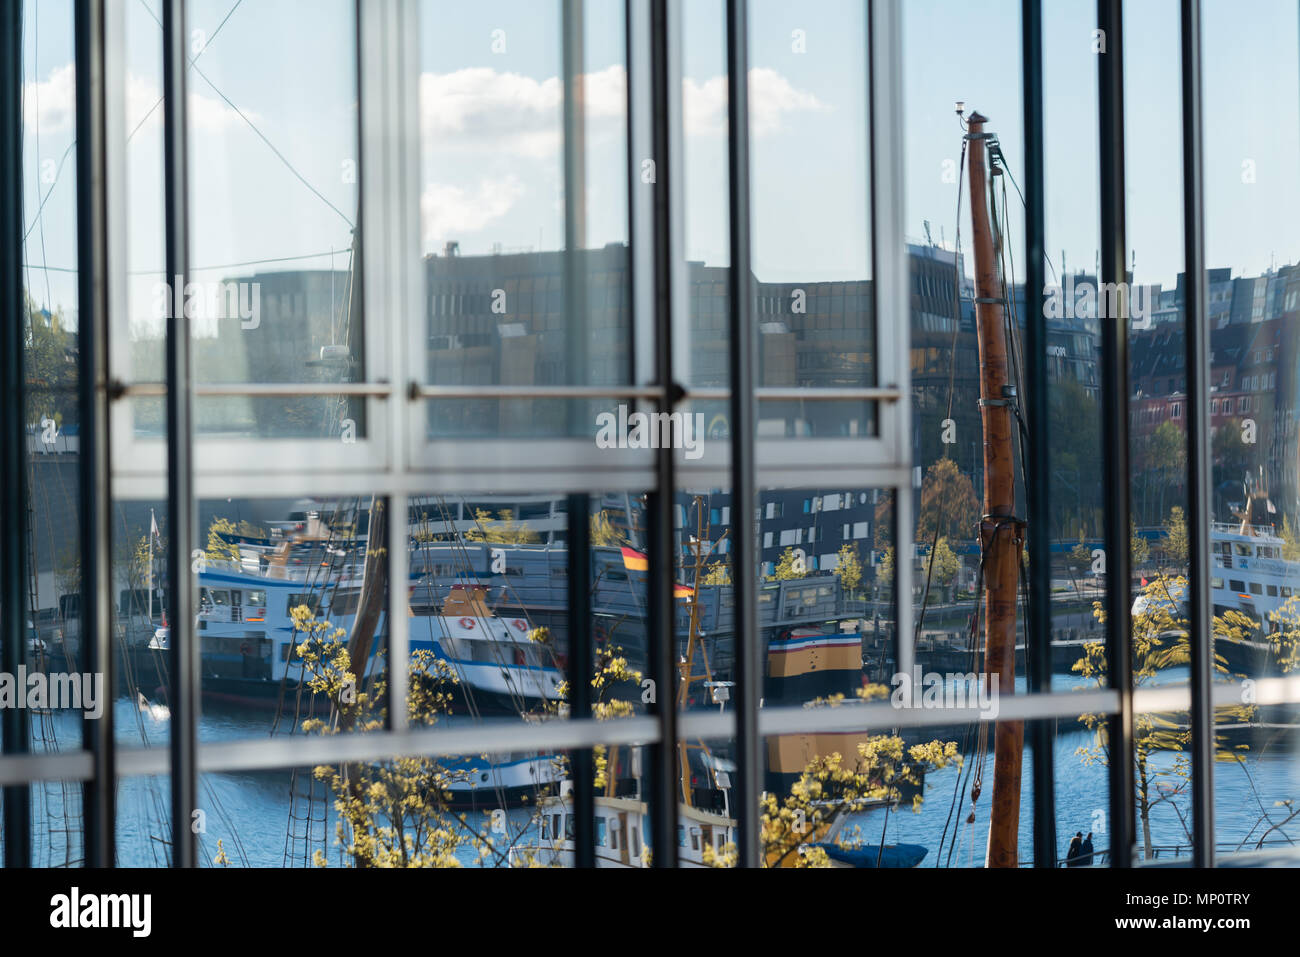 Das Ende der Kieler Förde, Hörn, Spiegelung im Glas vor einem Bürogebäude, Kiel, Schleswig-Holstein, Deutschland Stockfoto